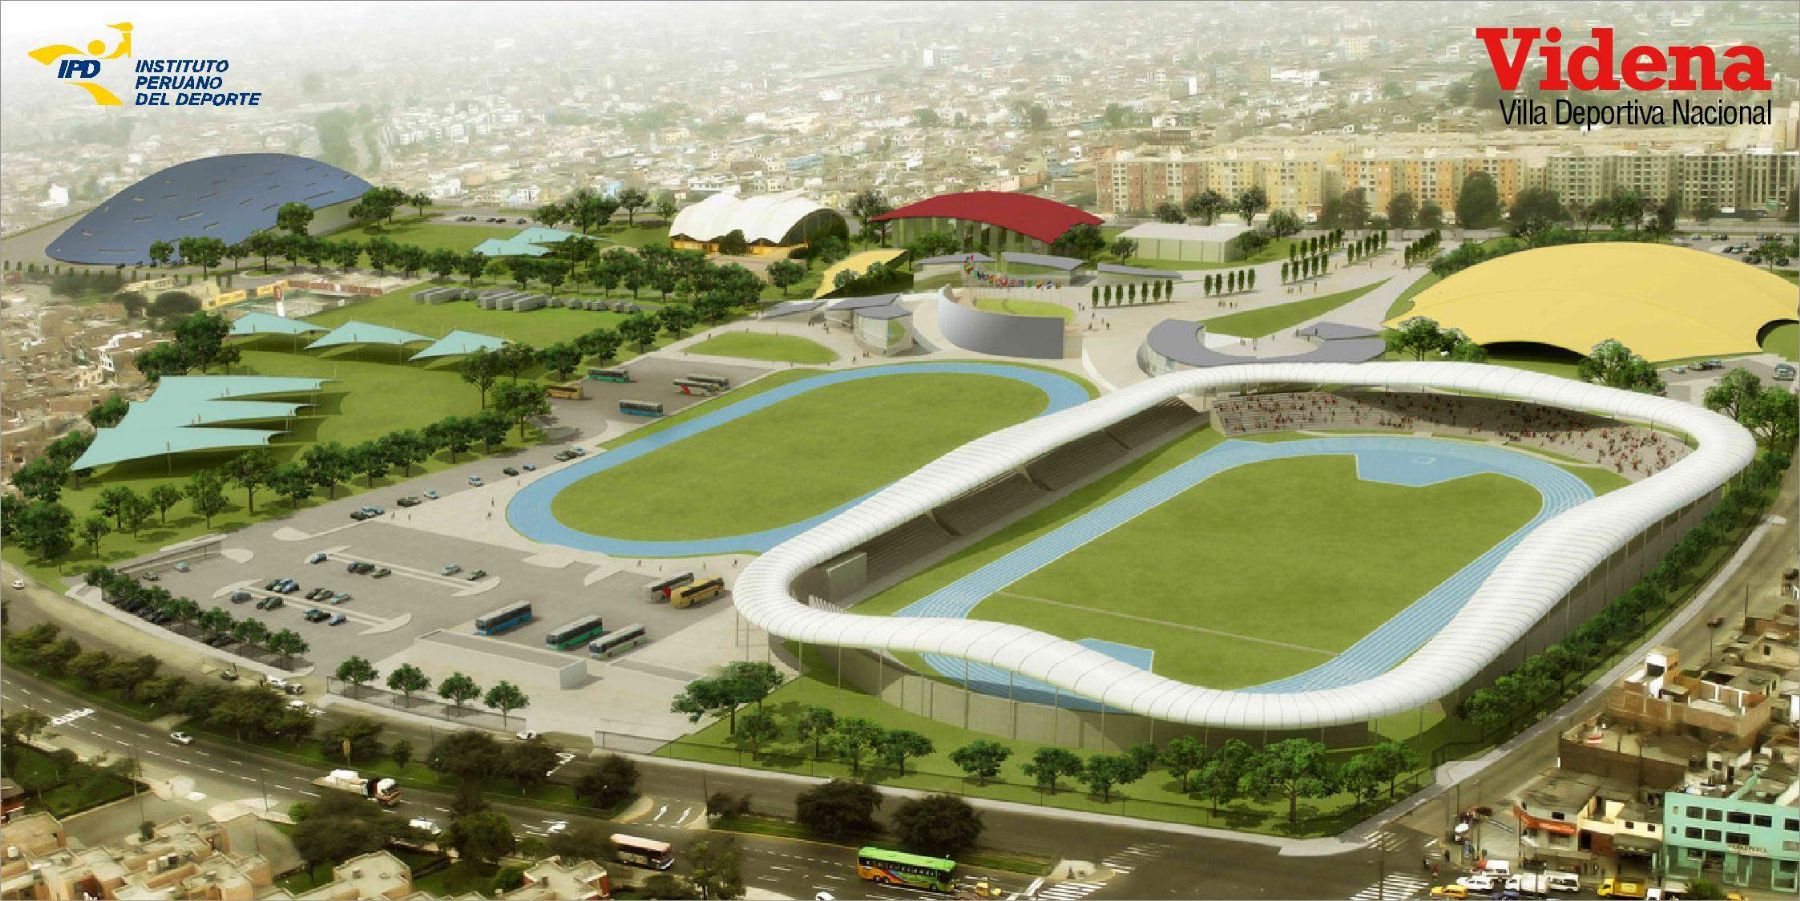 Proyecto de Nueva Villa Deportiva Nacional para los Juegos Panamericanos 2015. Foto: Difusión